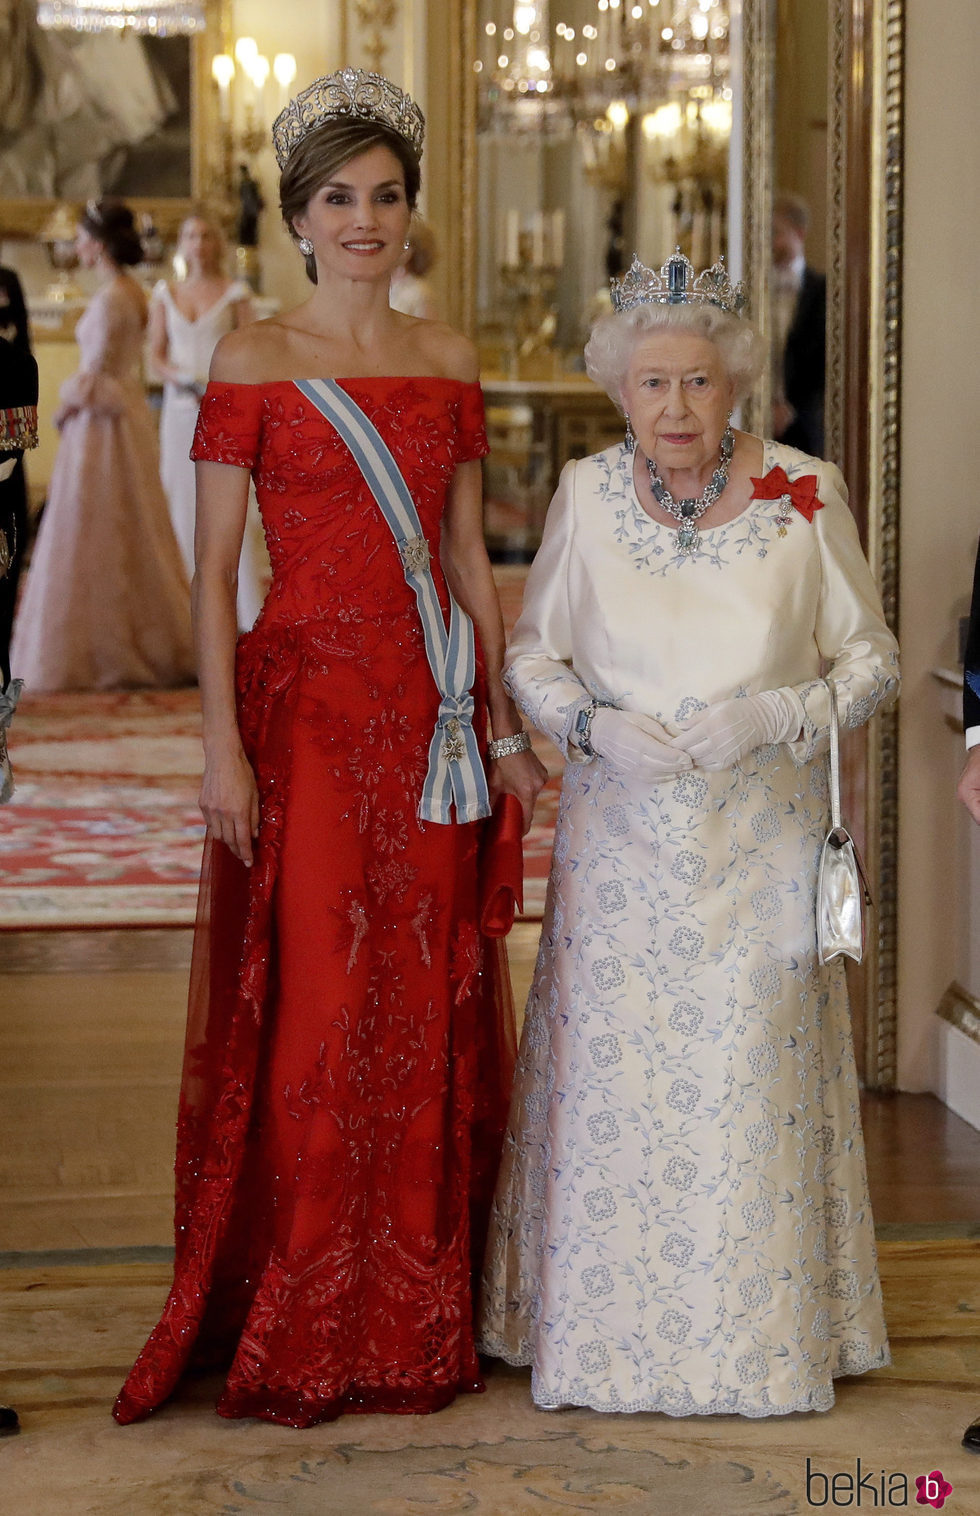 La Reina Letizia con vestido de tul y seda rojo